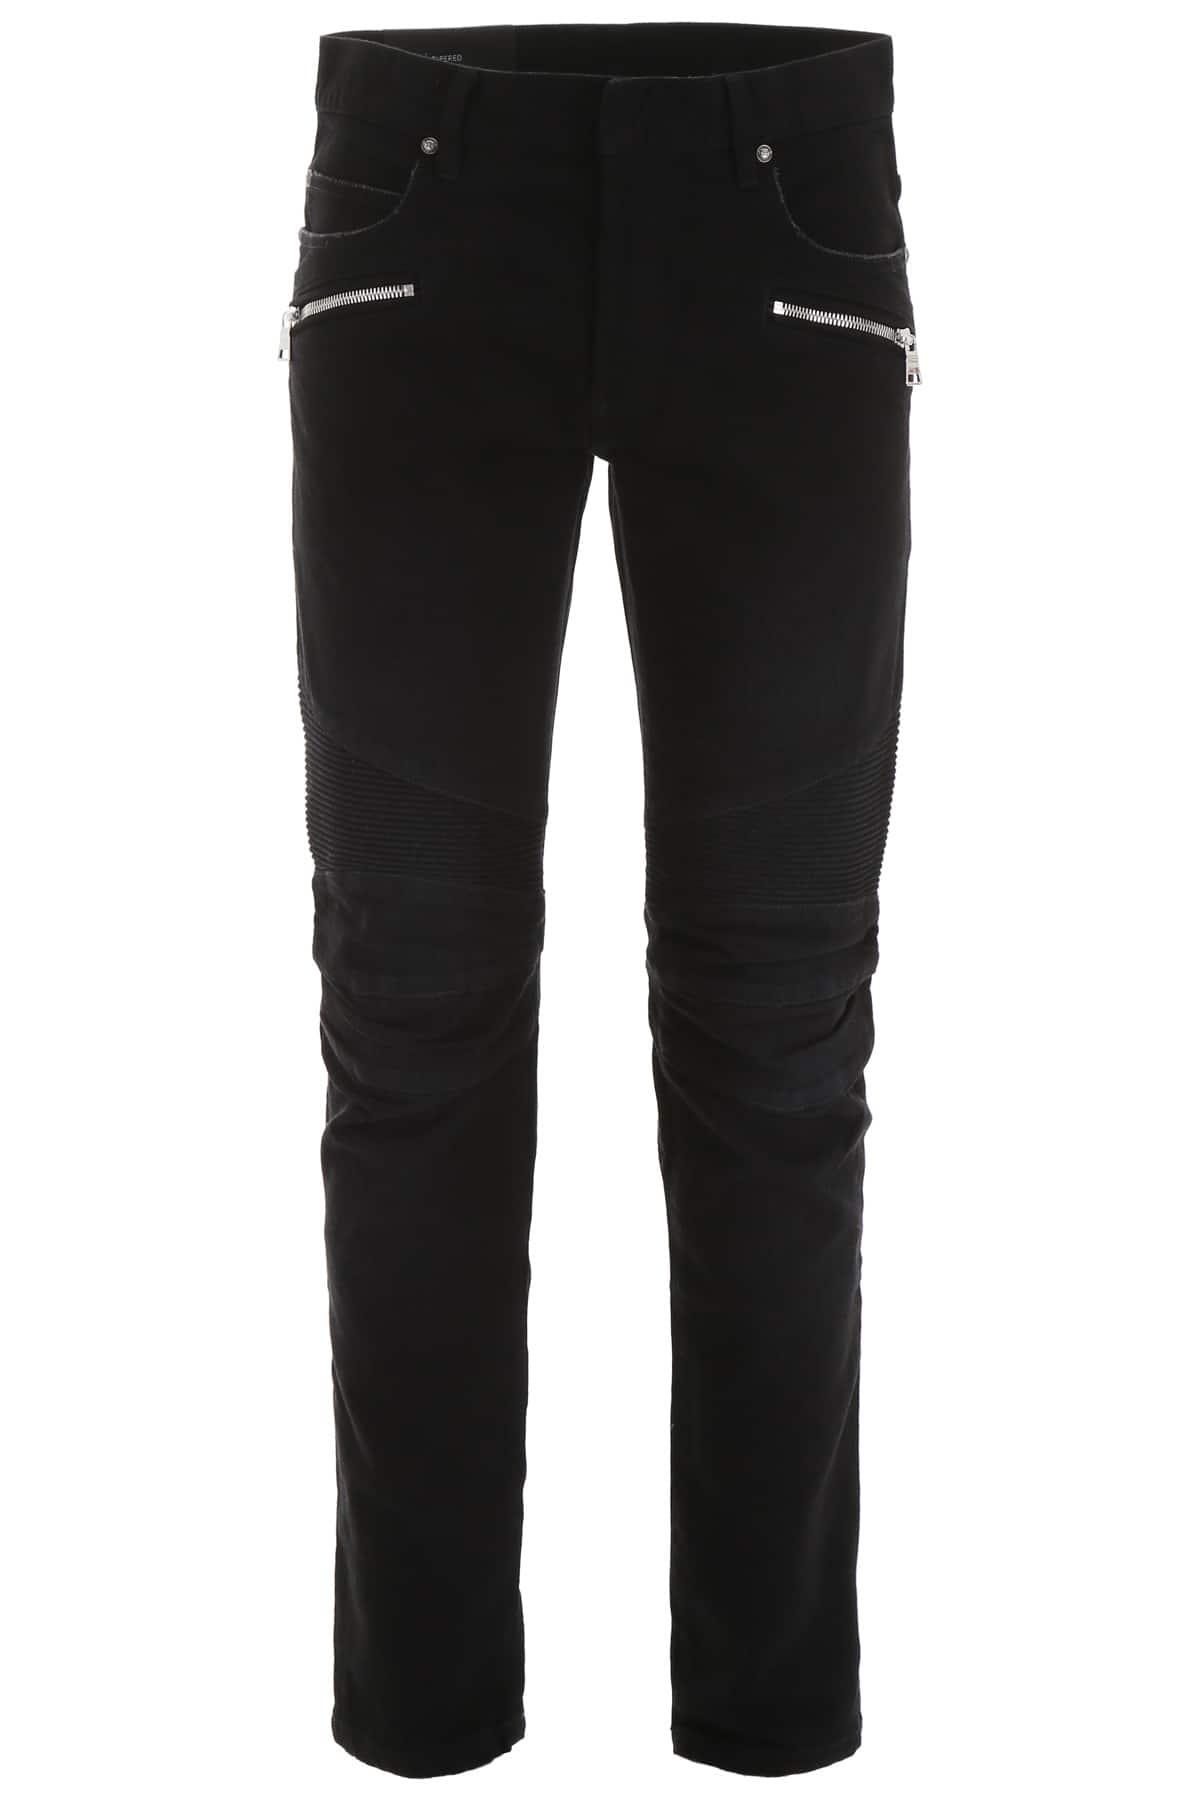 Balmain Denim Monogram Jeans in Black for Men - Lyst